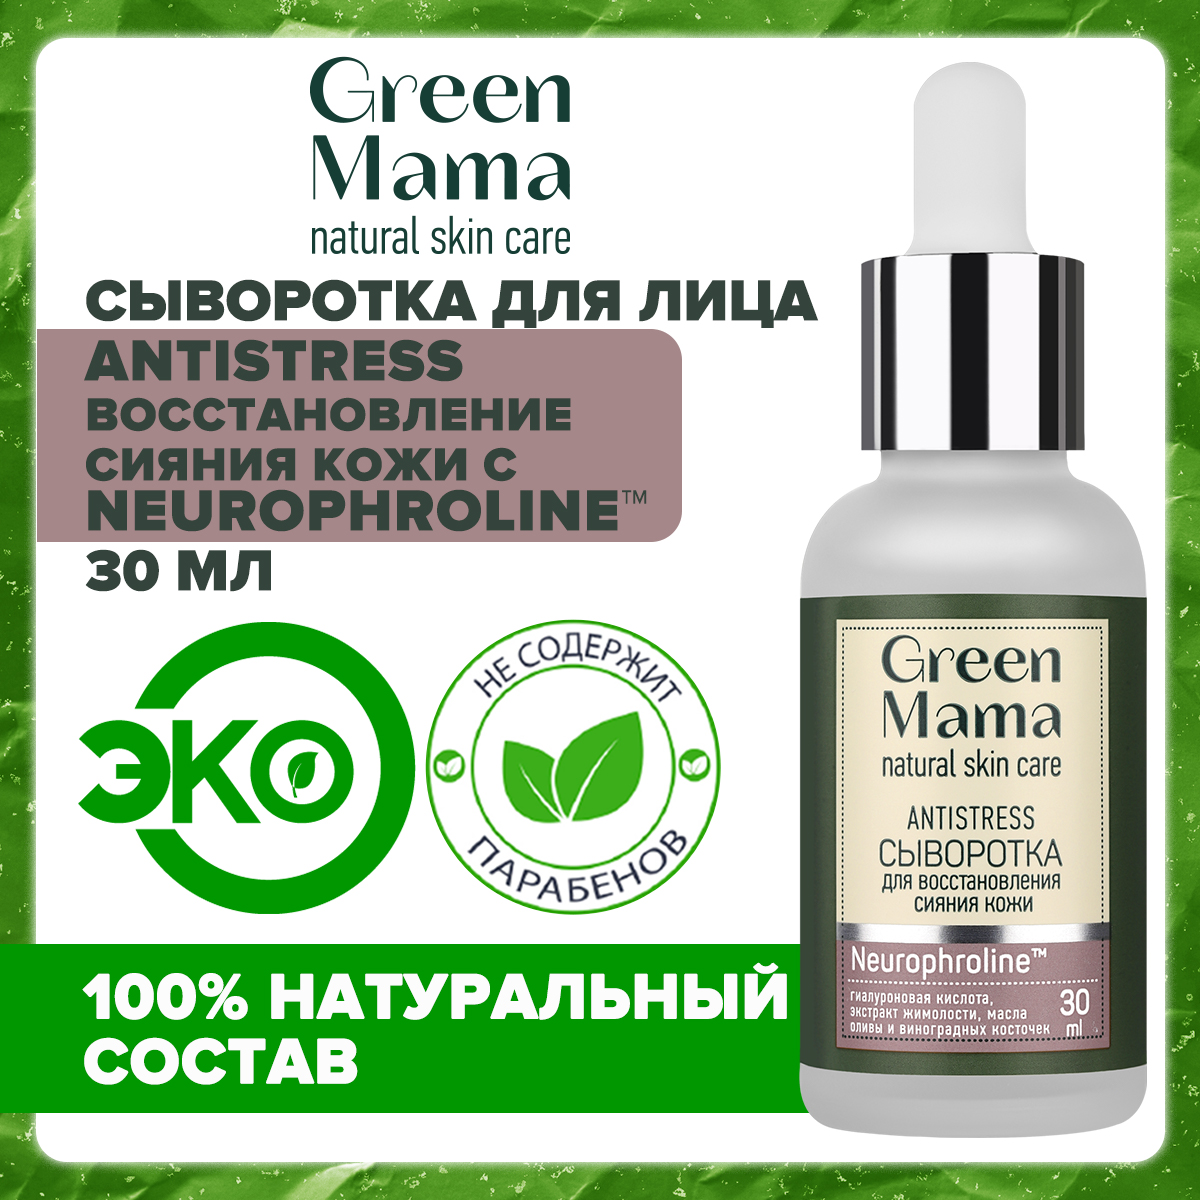 Сыворотка для лица Green Mama Antistress для восстановления сияния кожи, 30 мл